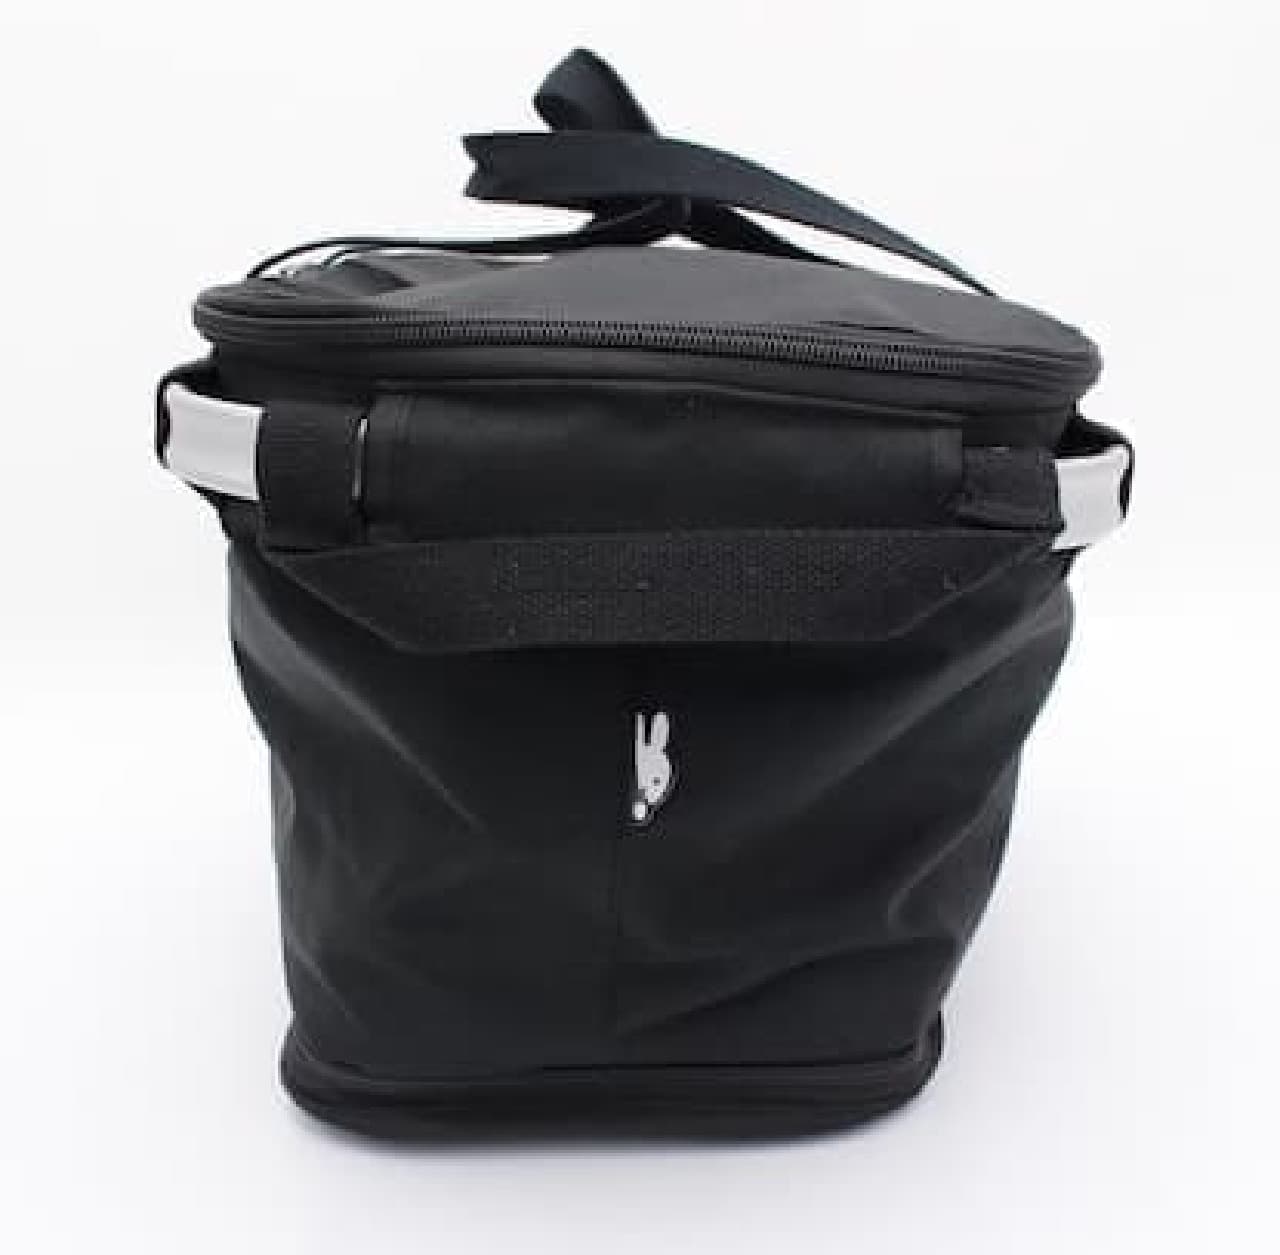 [Miffy] Cold storage aluminum frame basket bag